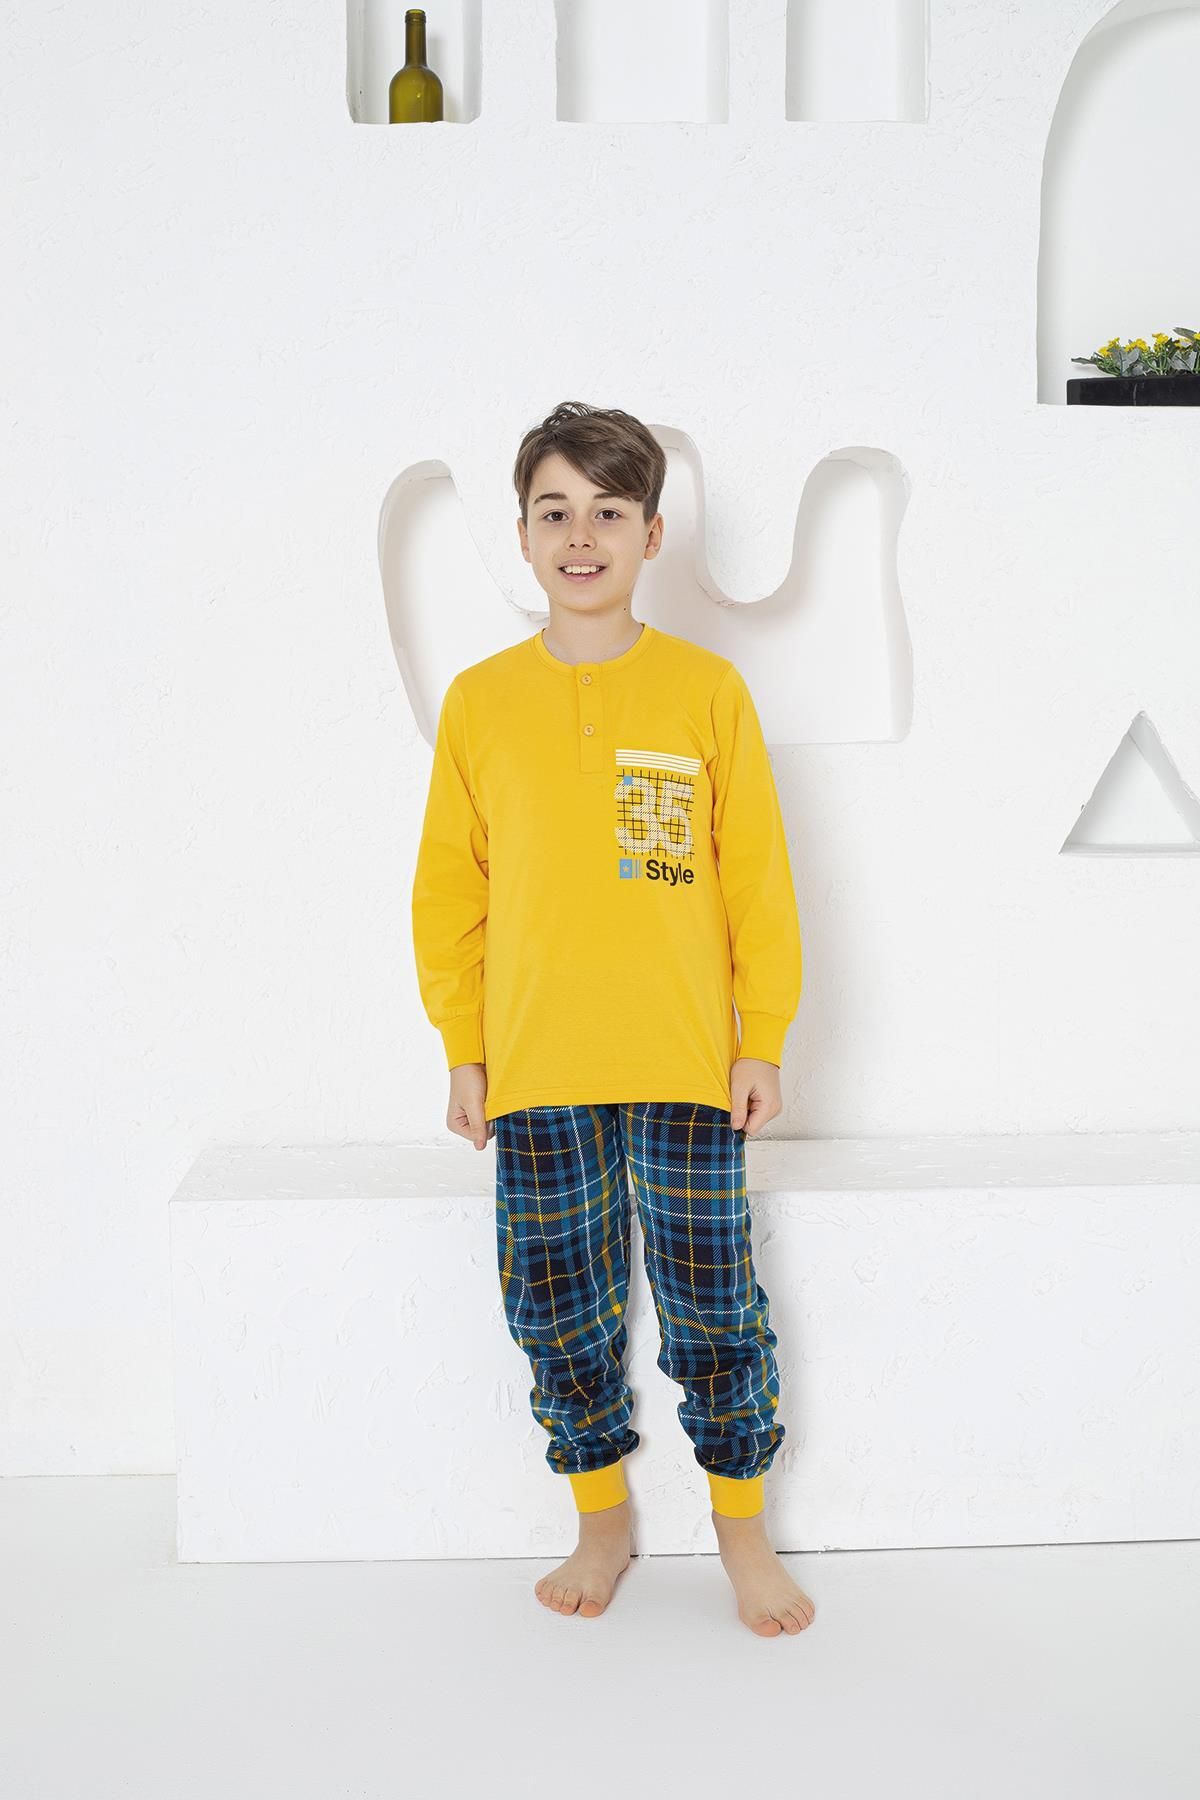 Estiva Erkek Çocuk 35 Baskılı Uzun Kollu Yazlık Pijama Takımı